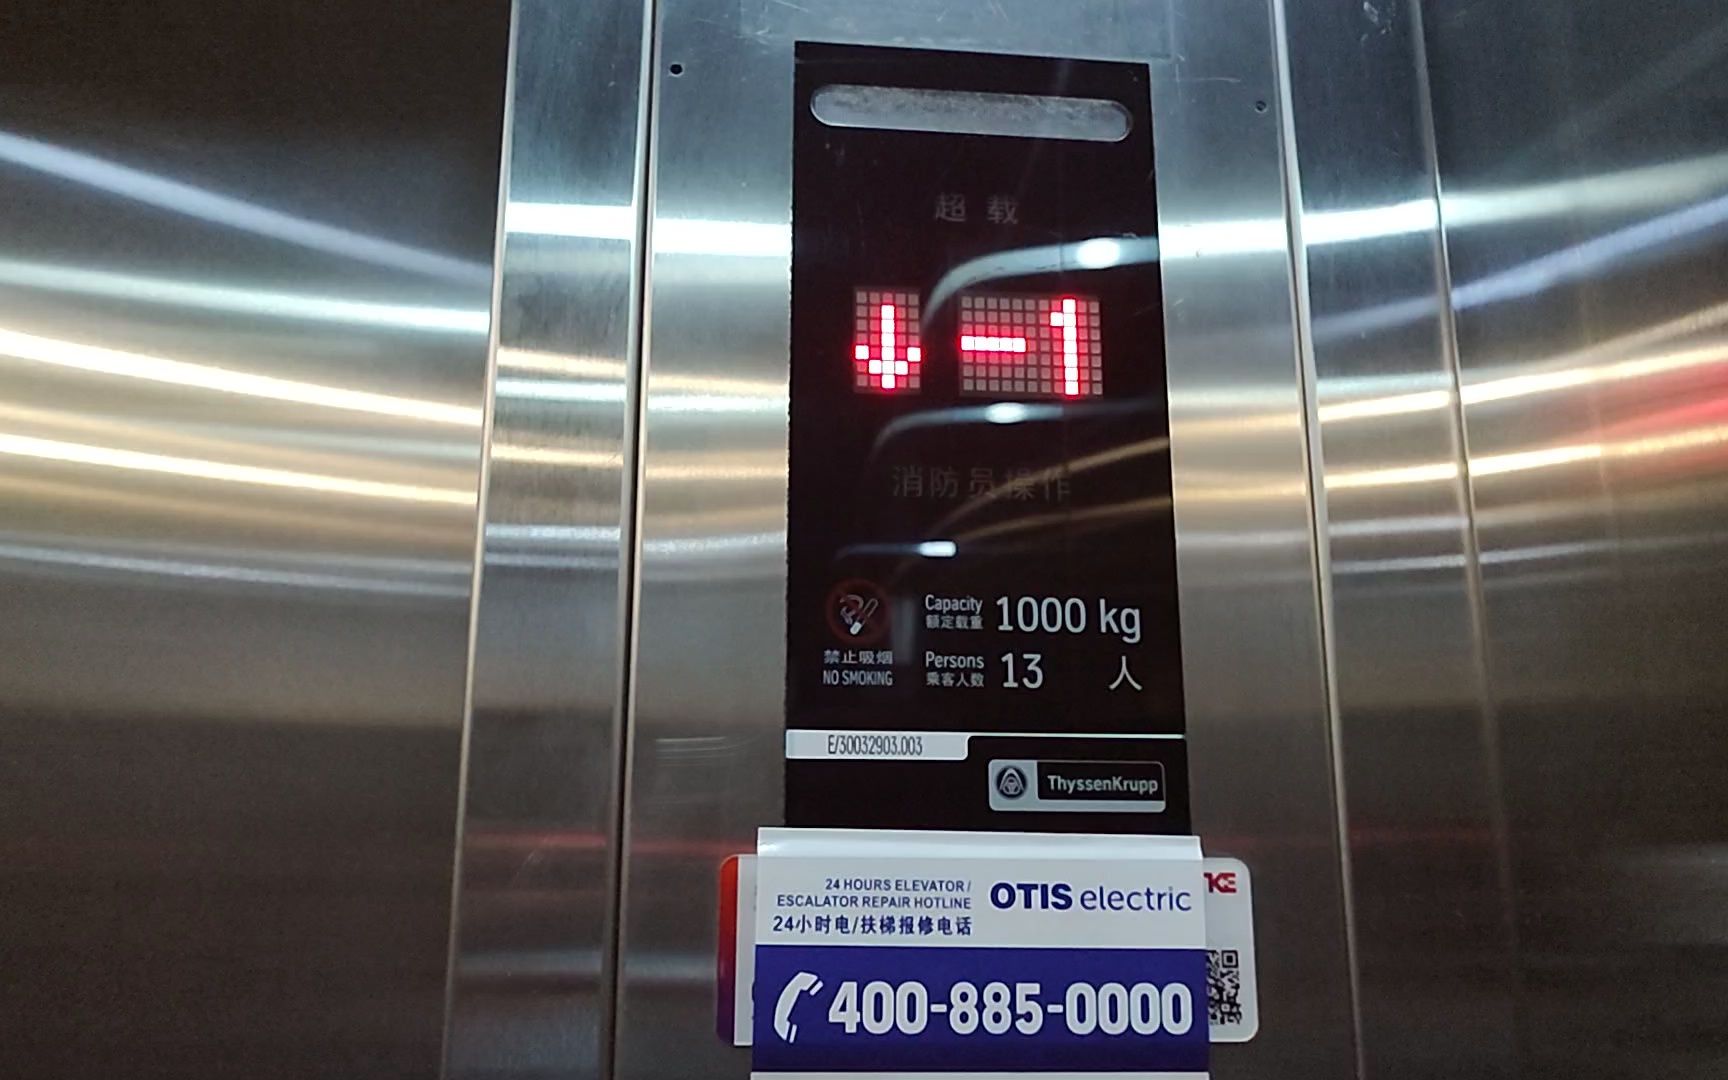 蒂森克虏伯电梯标志图片